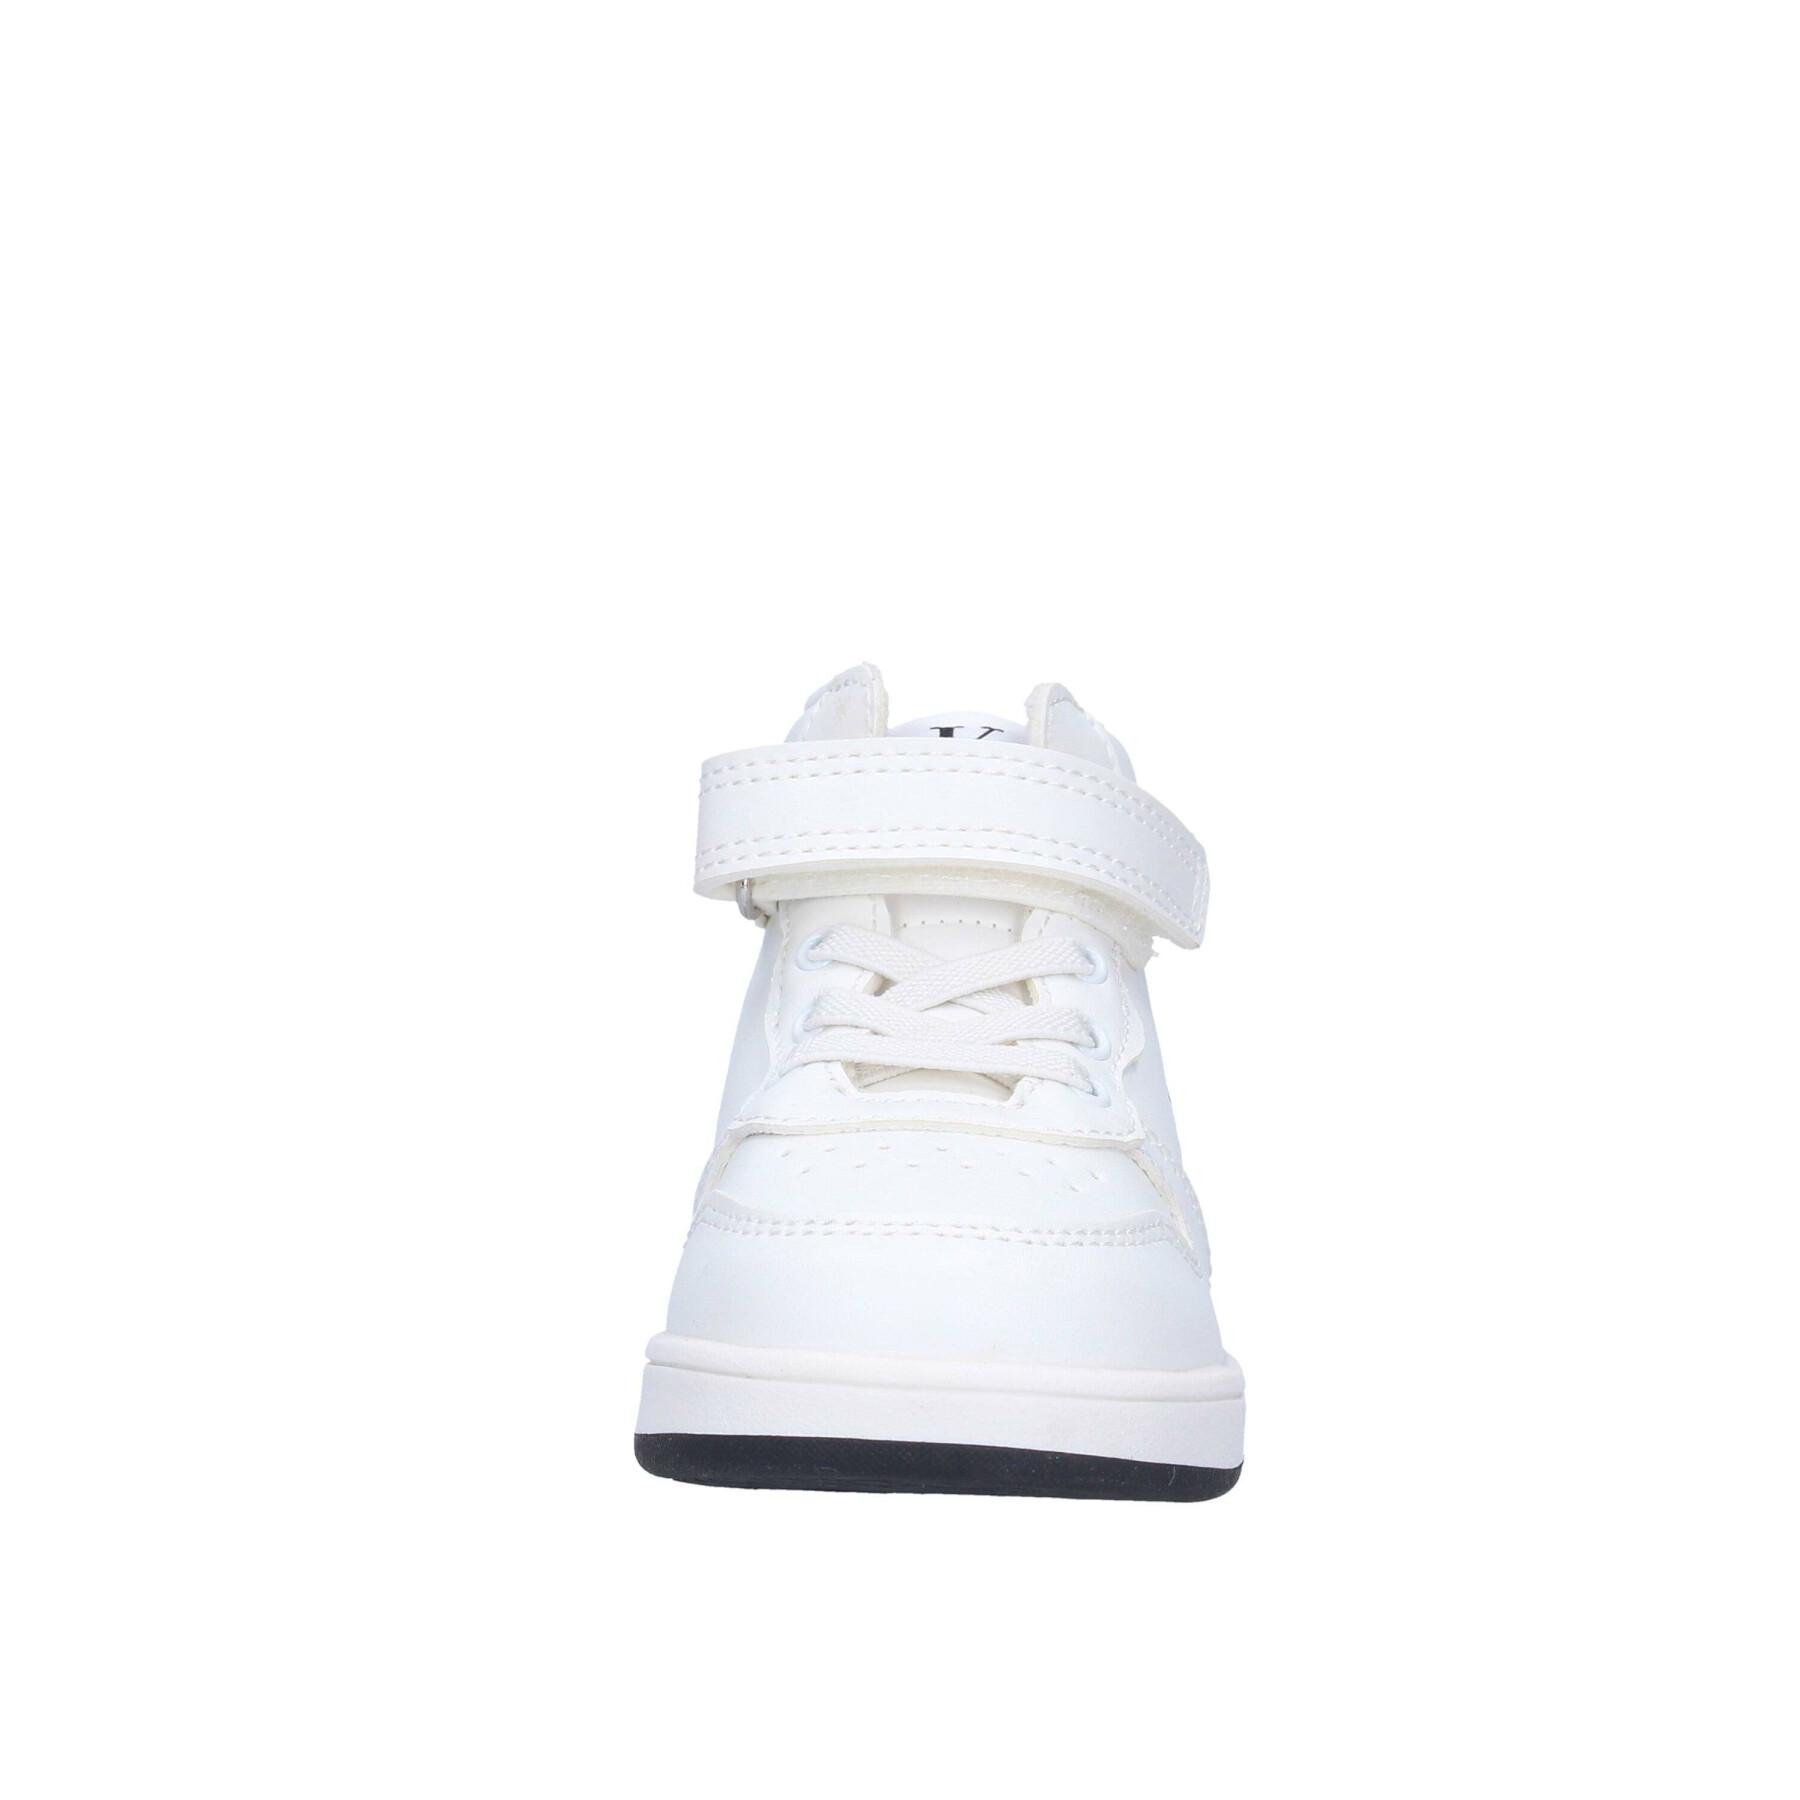 Kinderschoenen met vetersluiting en klittenband Calvin Klein white/black